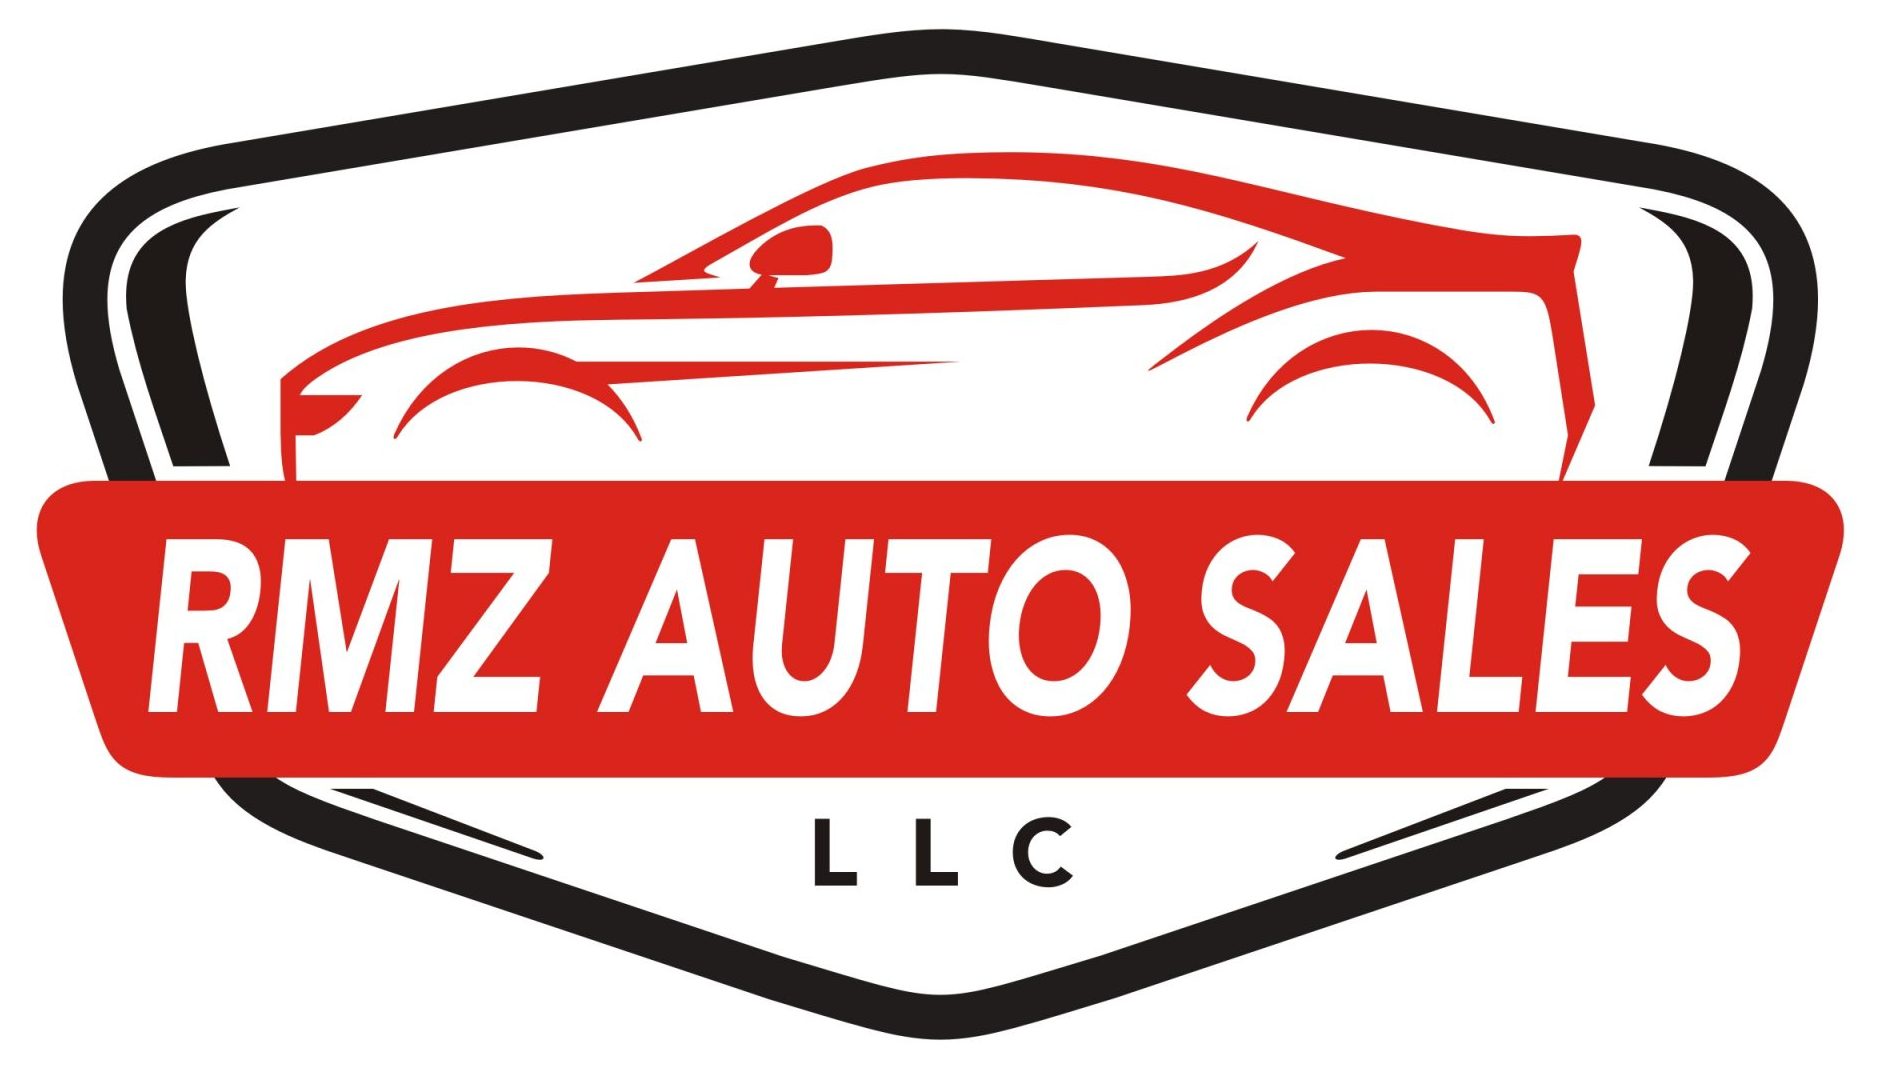 RMZ Auto Sales LLC